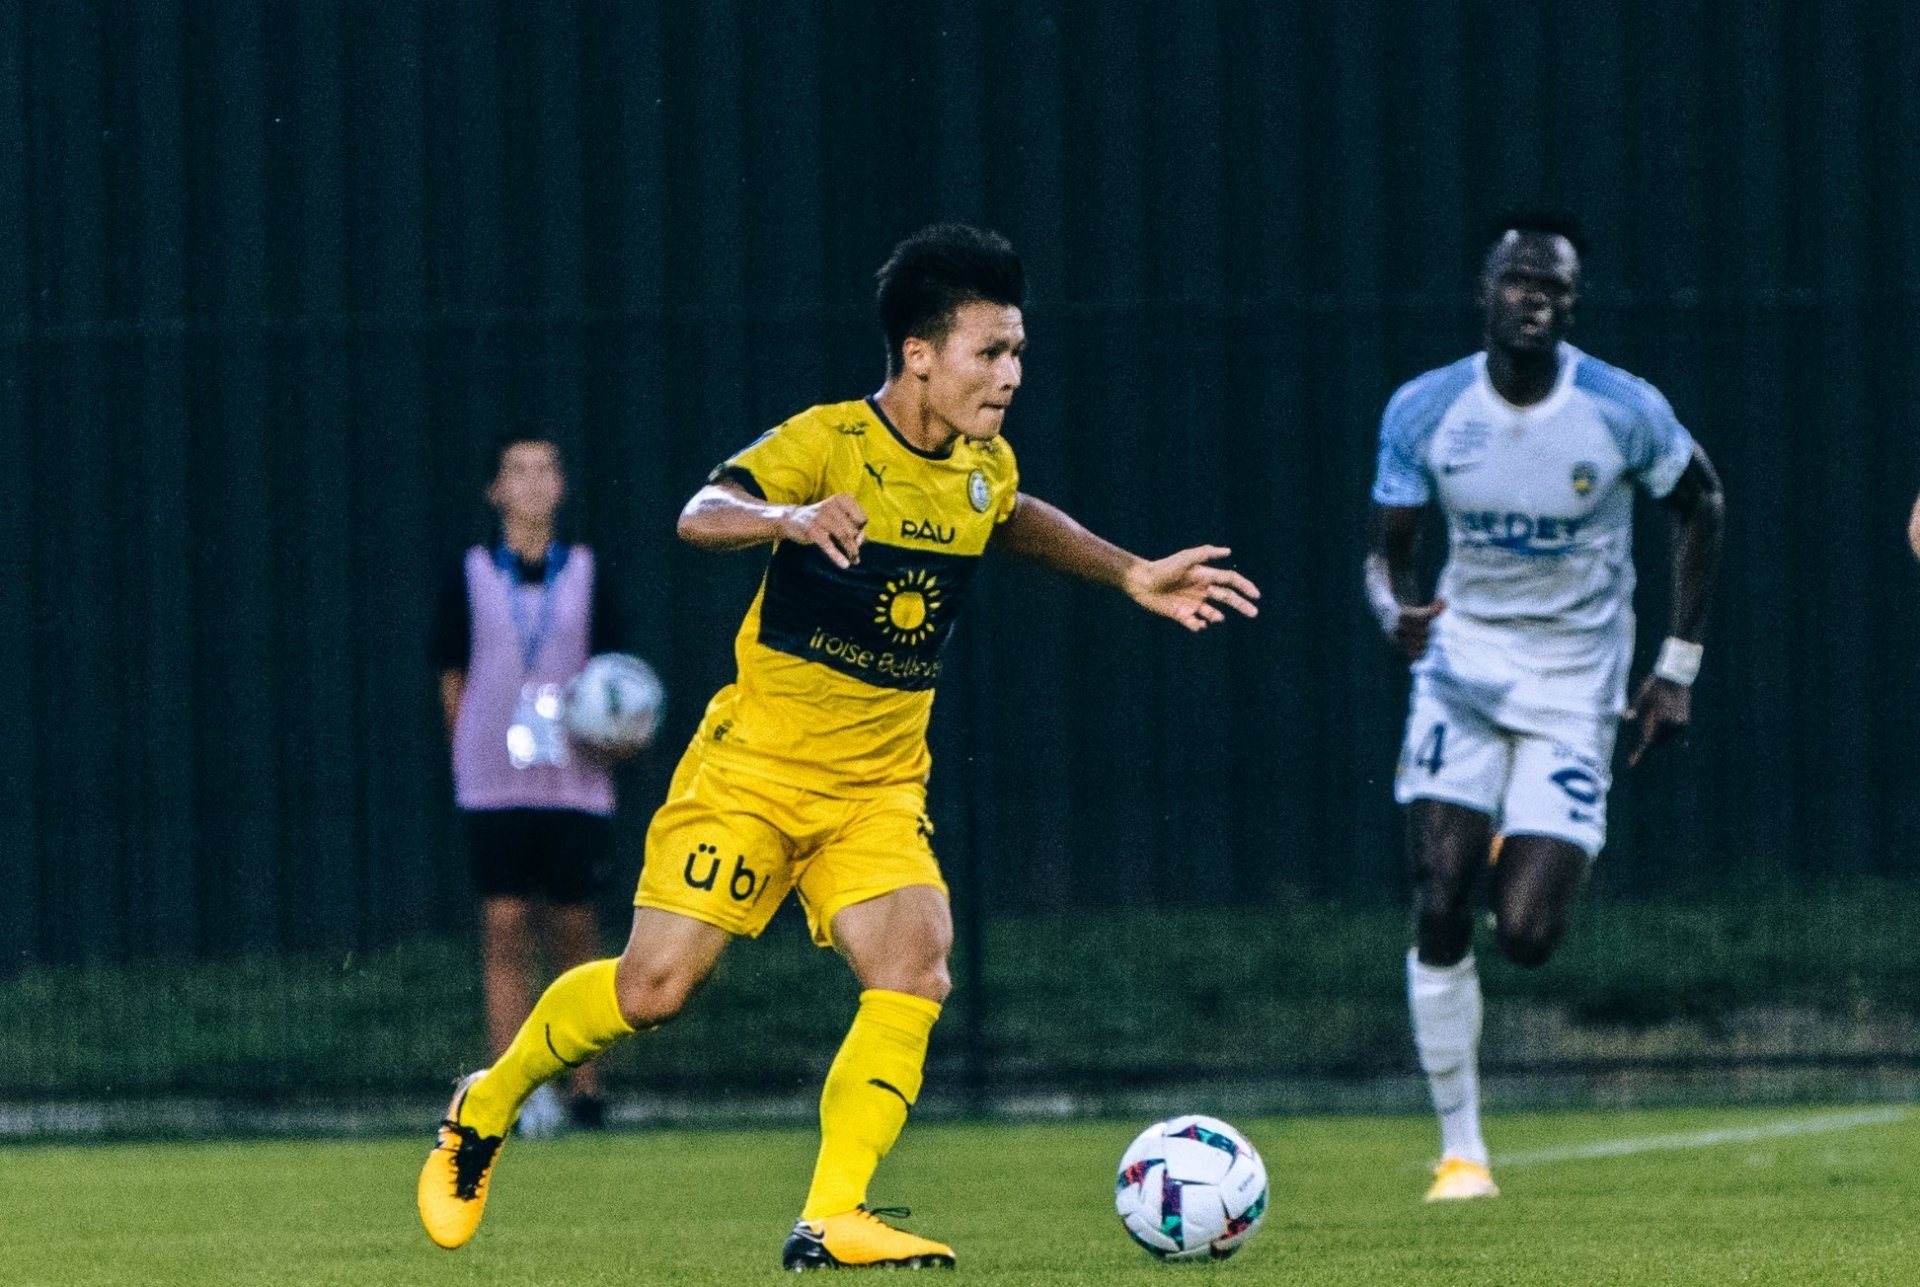 Báo Pháp gọi tên Quang Hải trước trận Pau FC gặp Annecy - Ảnh 1.